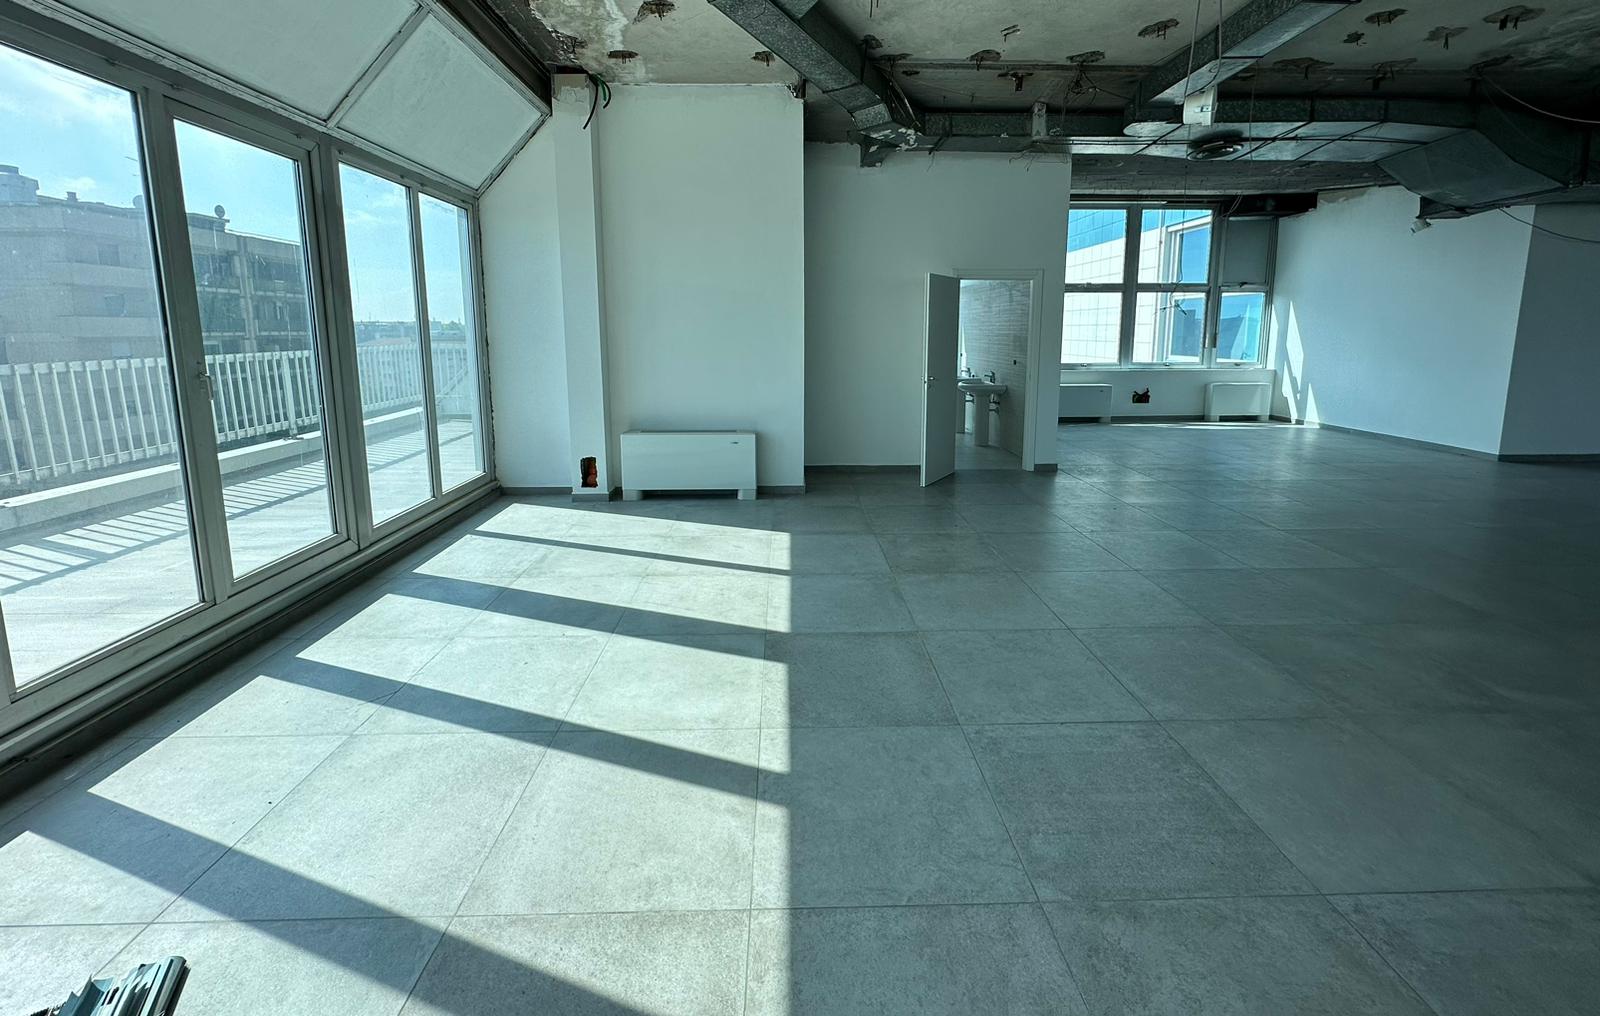 Ufficio 525 mq - quarto piano - Atlantic Business Center - vetrata sul terrazzo